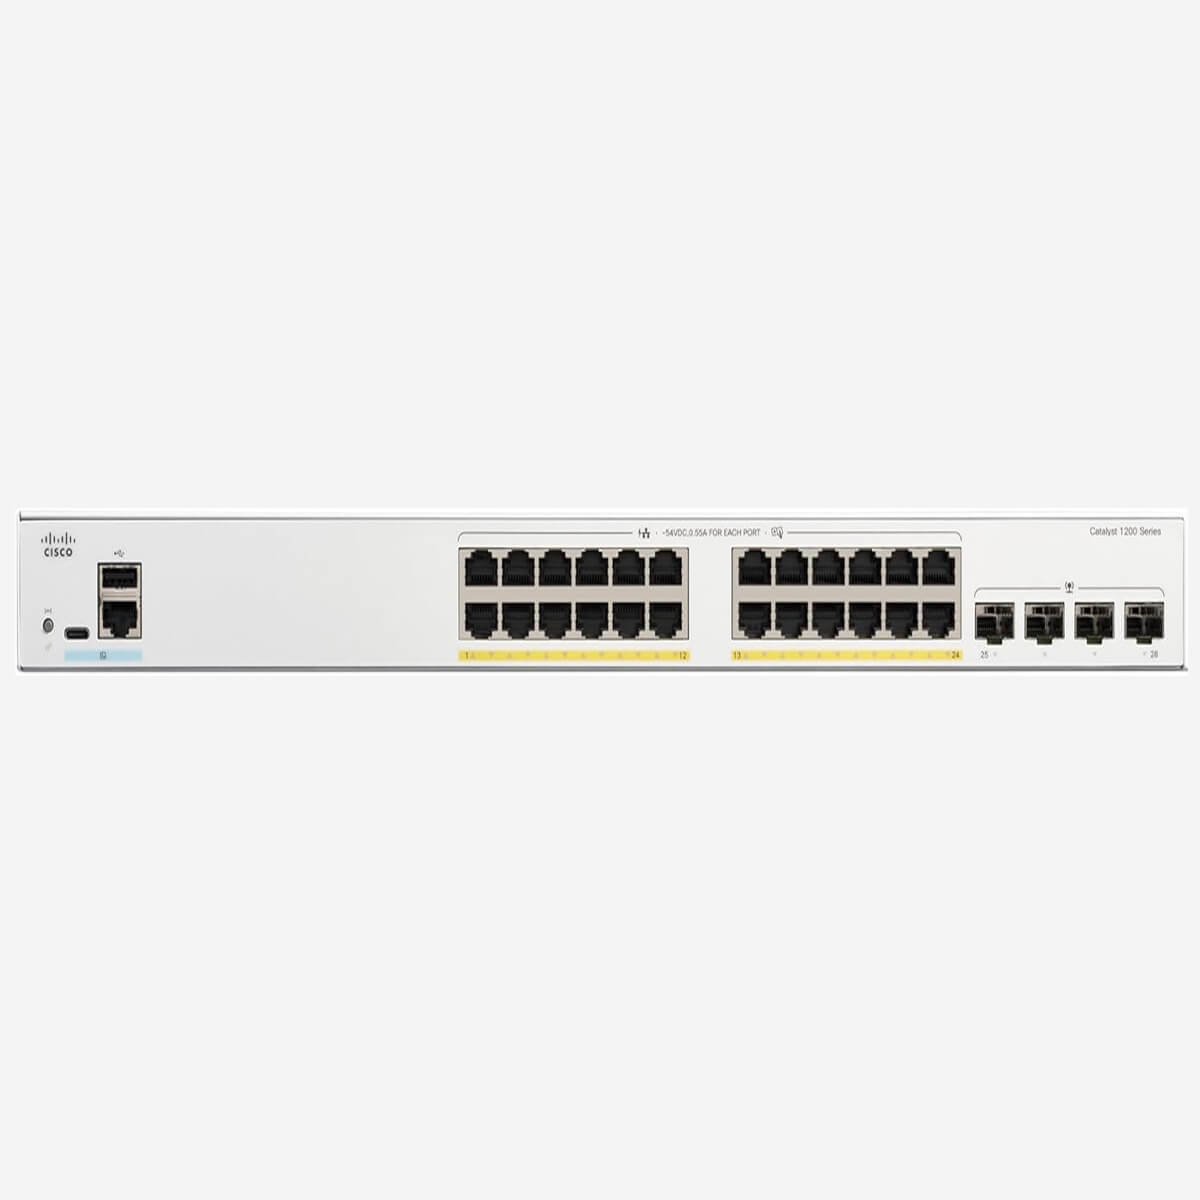 Hình ảnh switch Cisco Catalyst C1200-24P-4G với 24 cổng PoE+ và 4 cổng uplink Gigabit Ethernet.